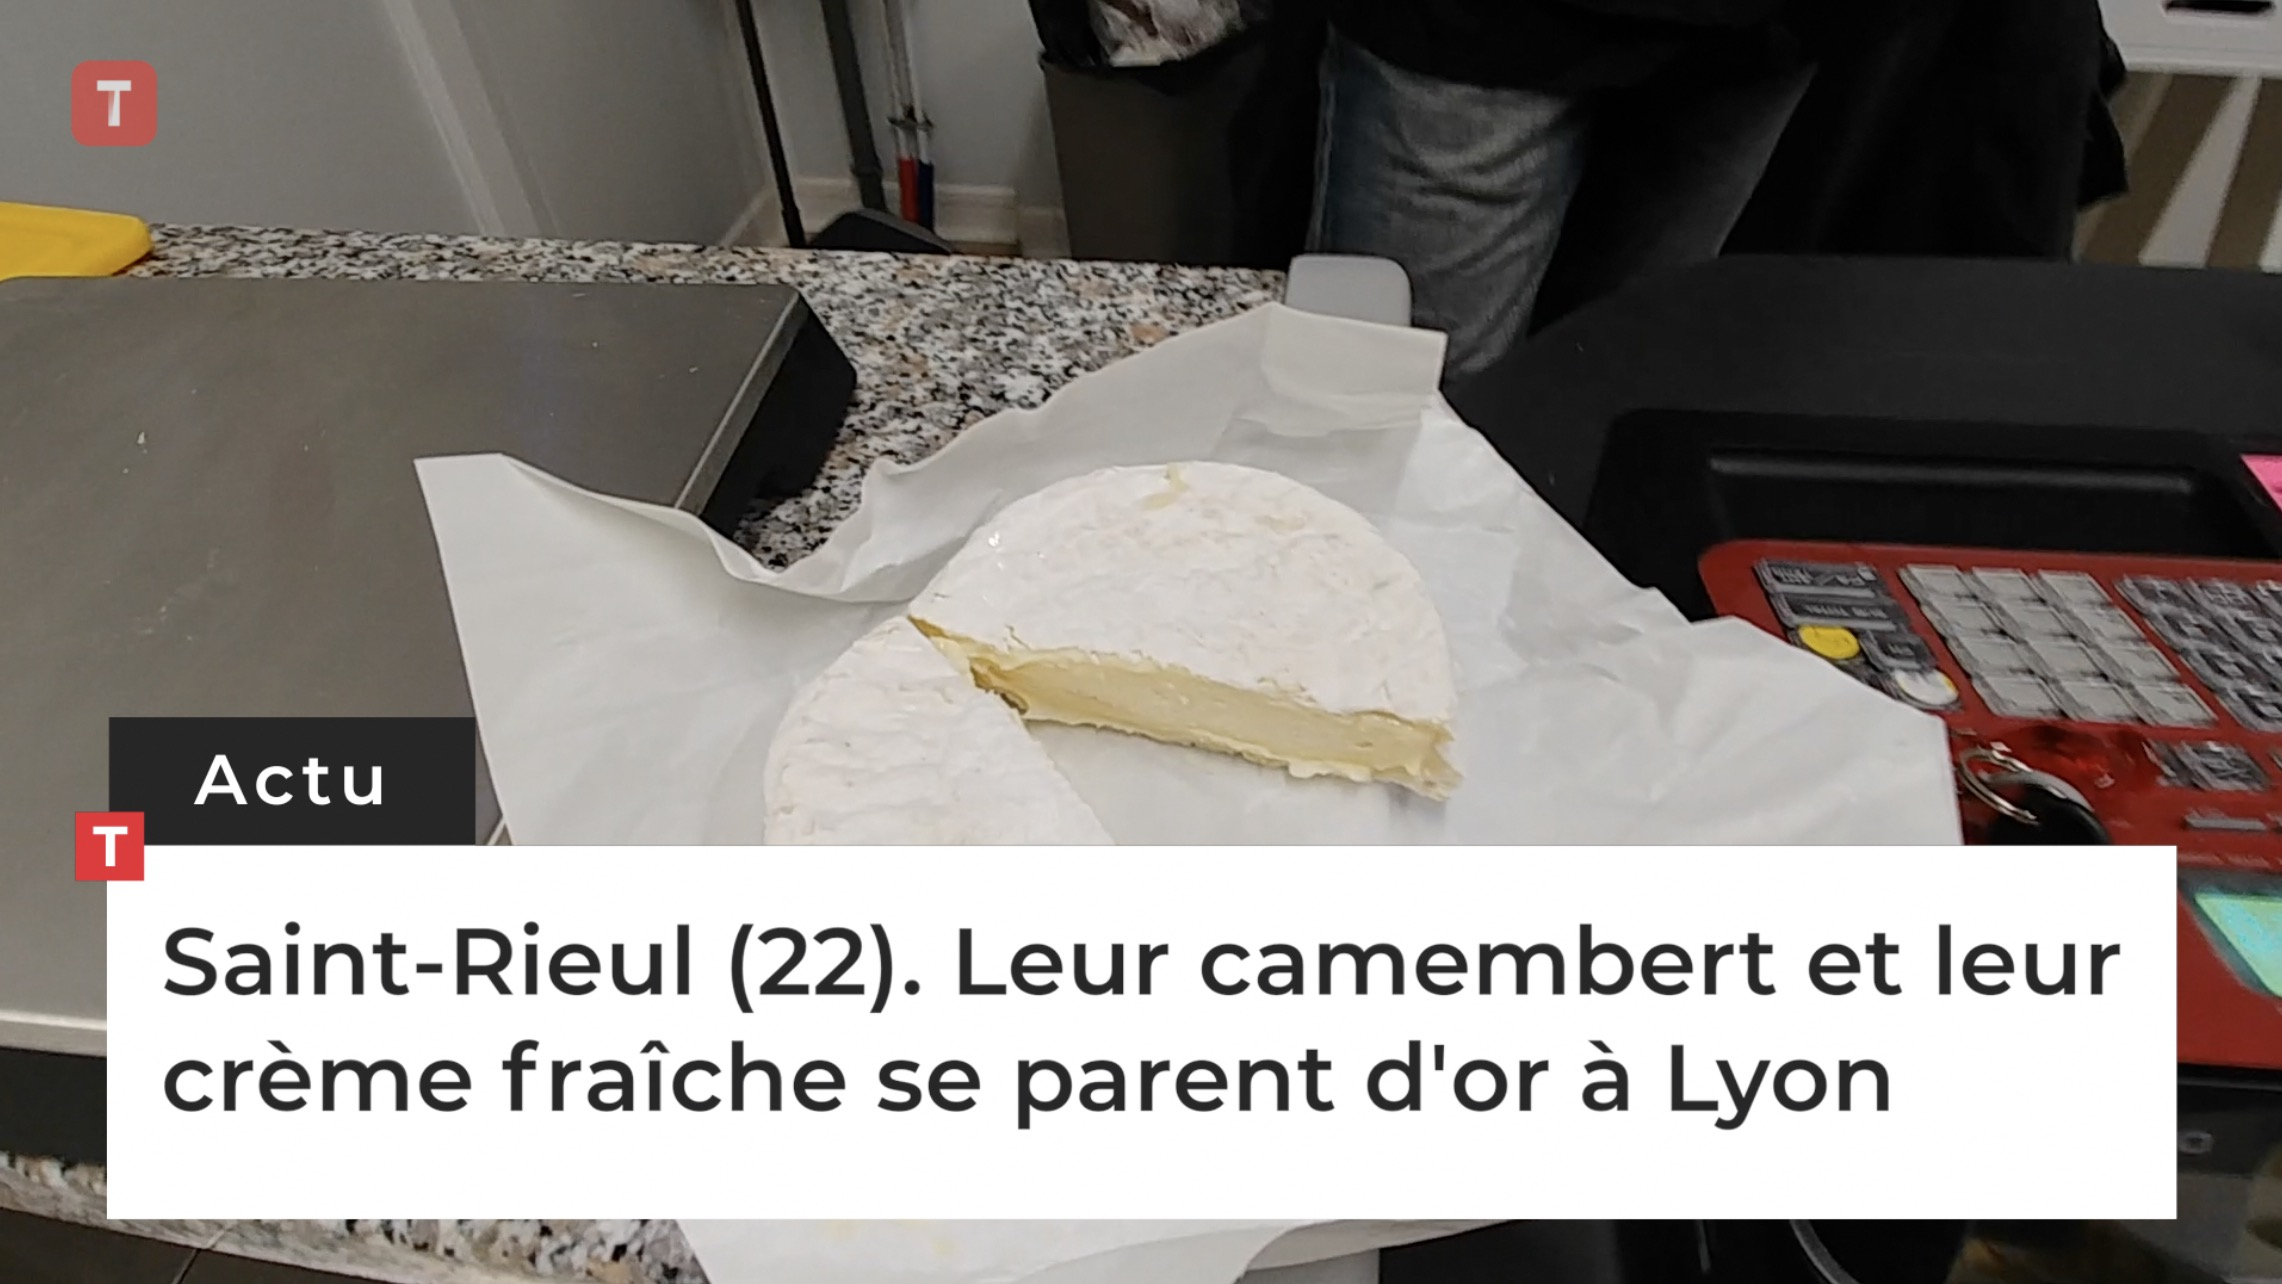 Saint-Rieul (22). Leur camembert et leur crème fraîche se parent d'or à Lyon (Le Télégramme)